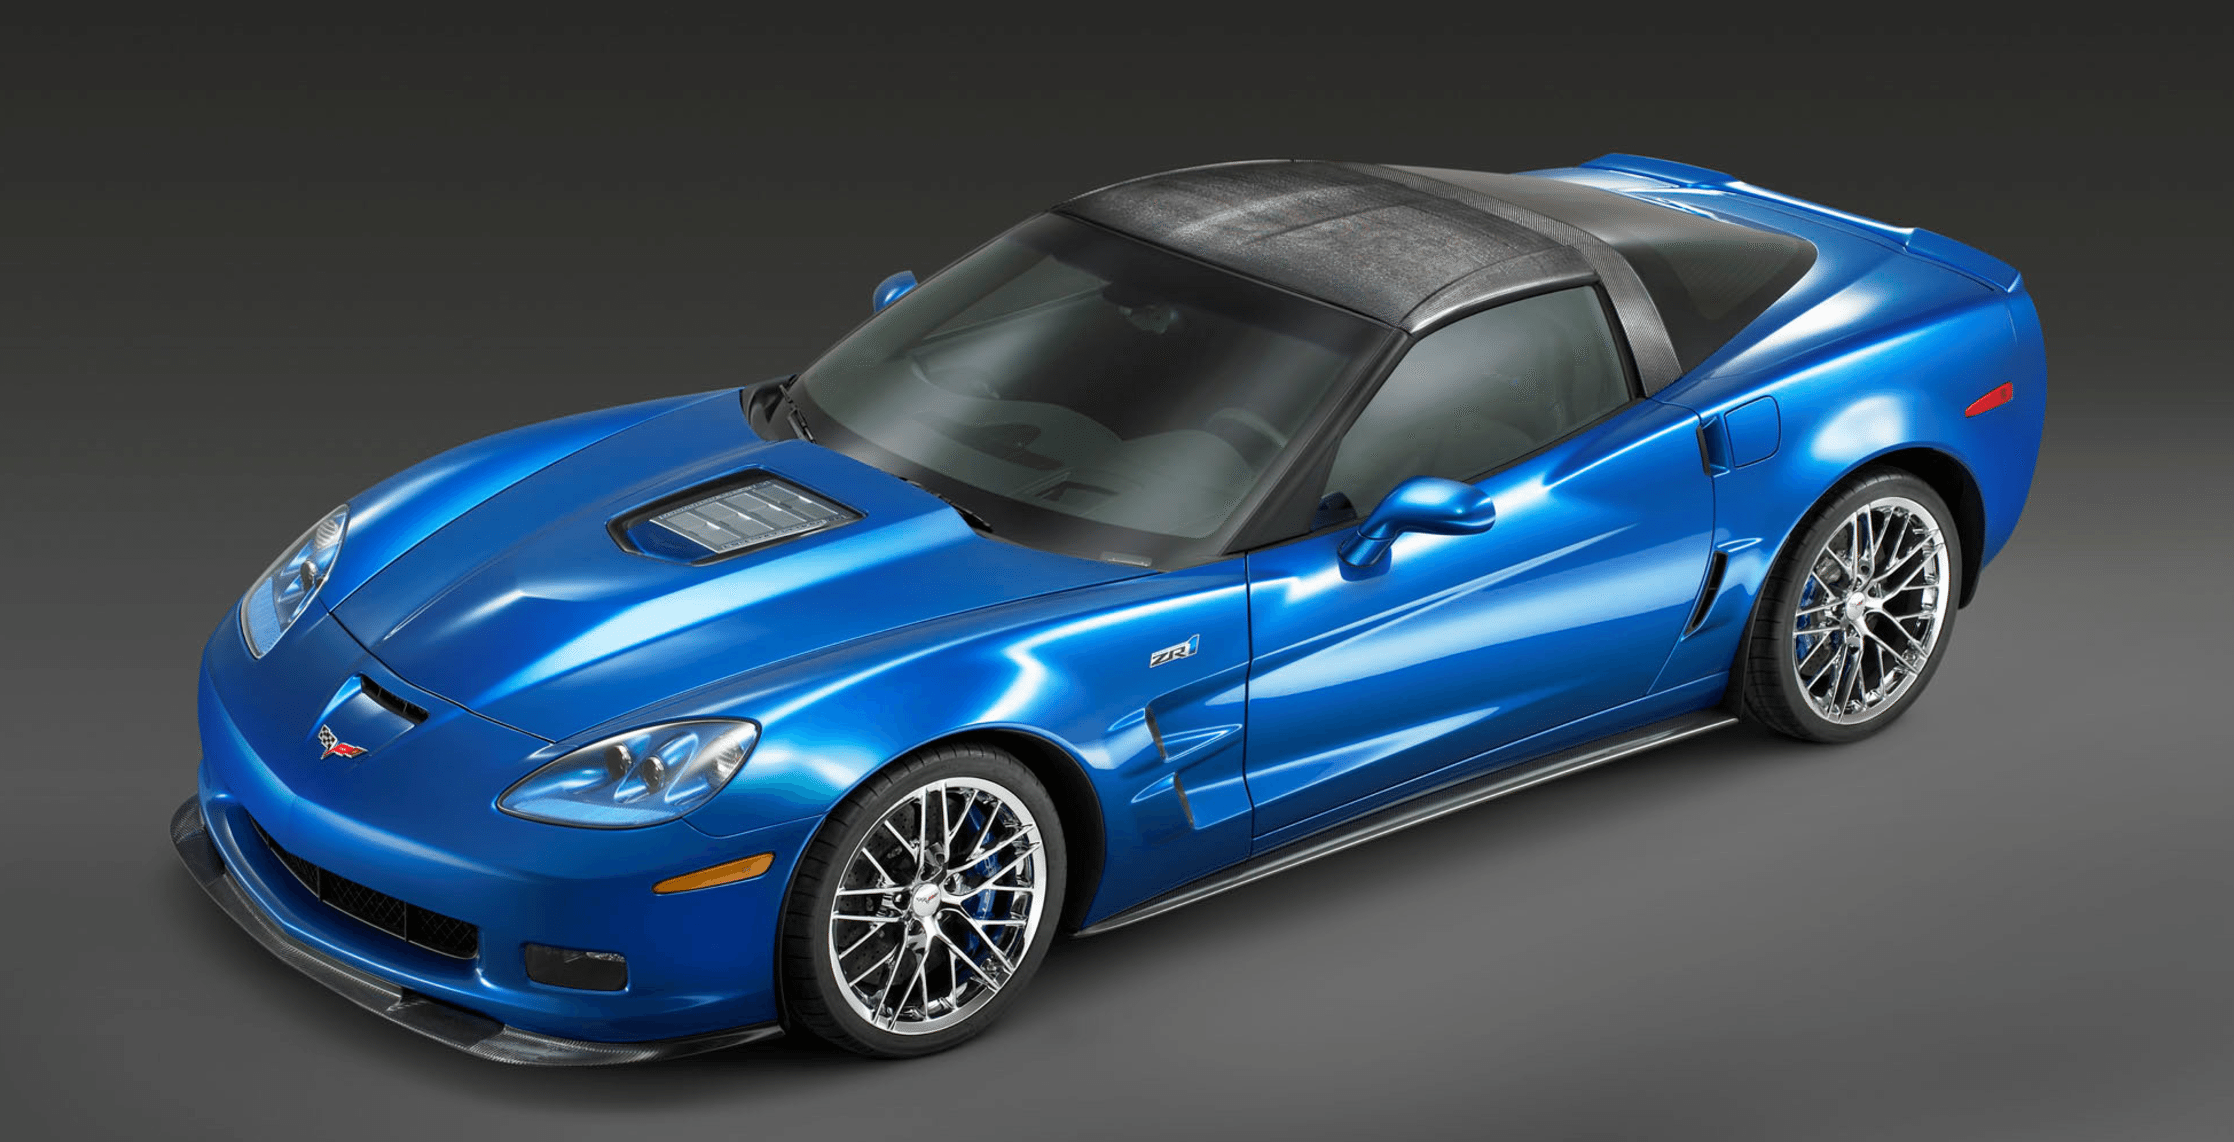 2007 Corvette Blue Devil